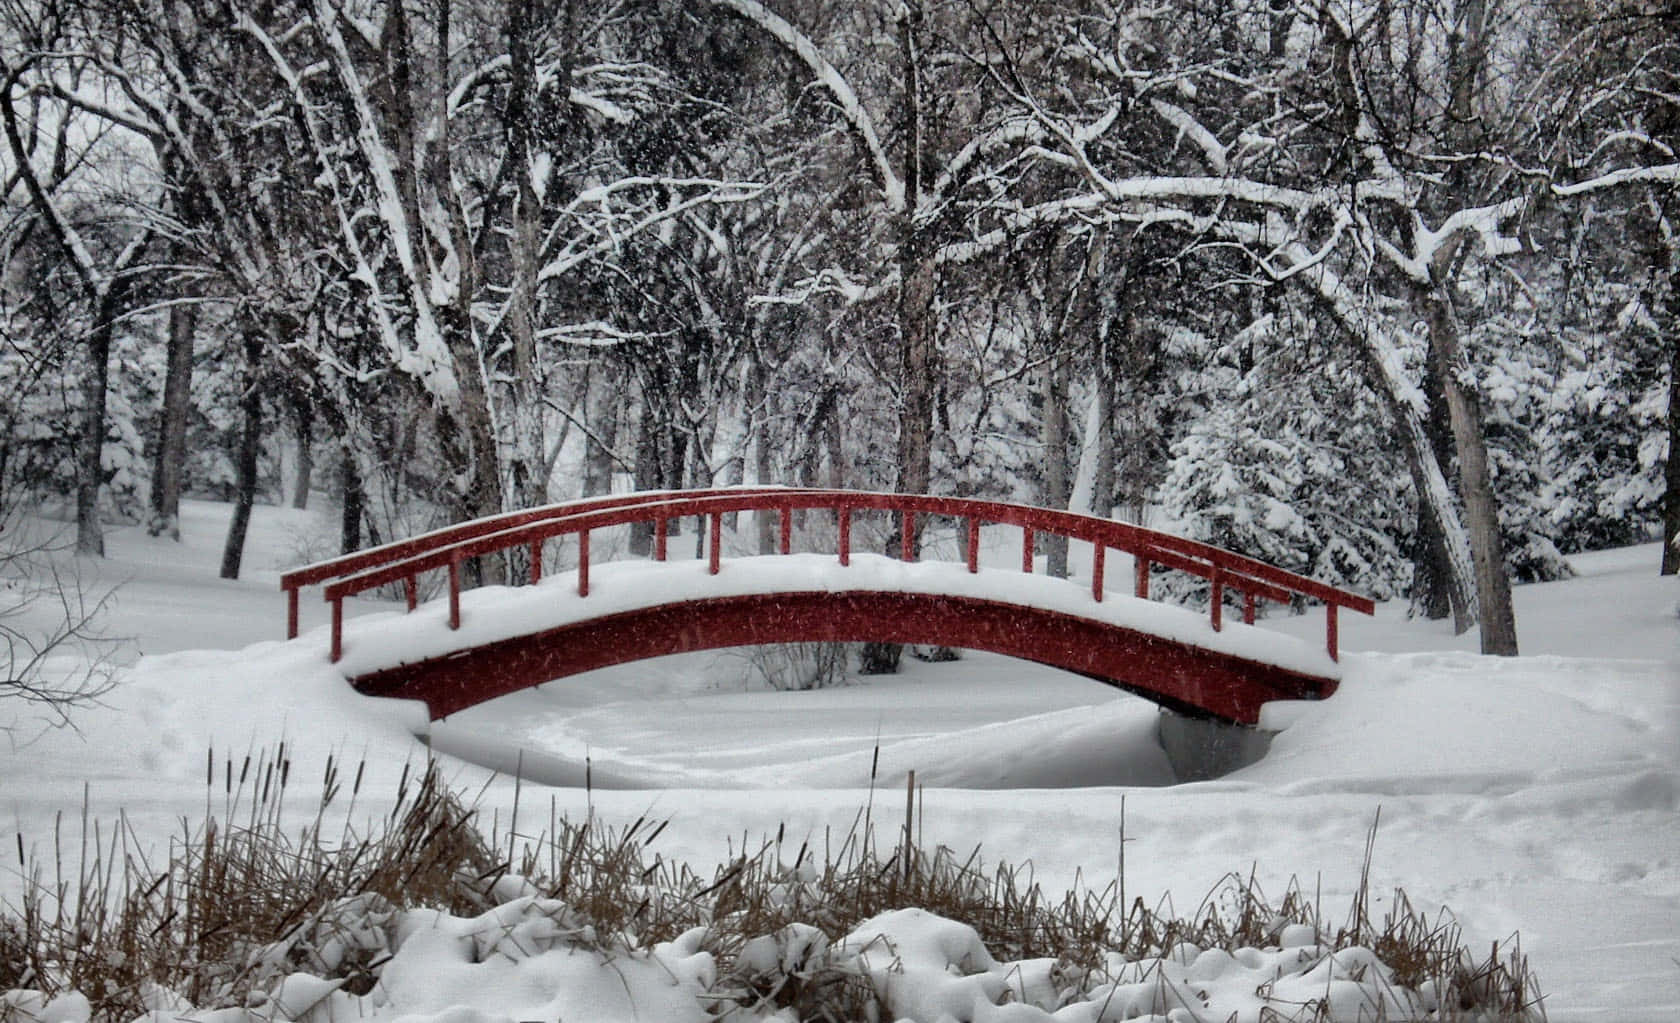 Snowy Japanese Garden Bridge Winter Wonderland Background